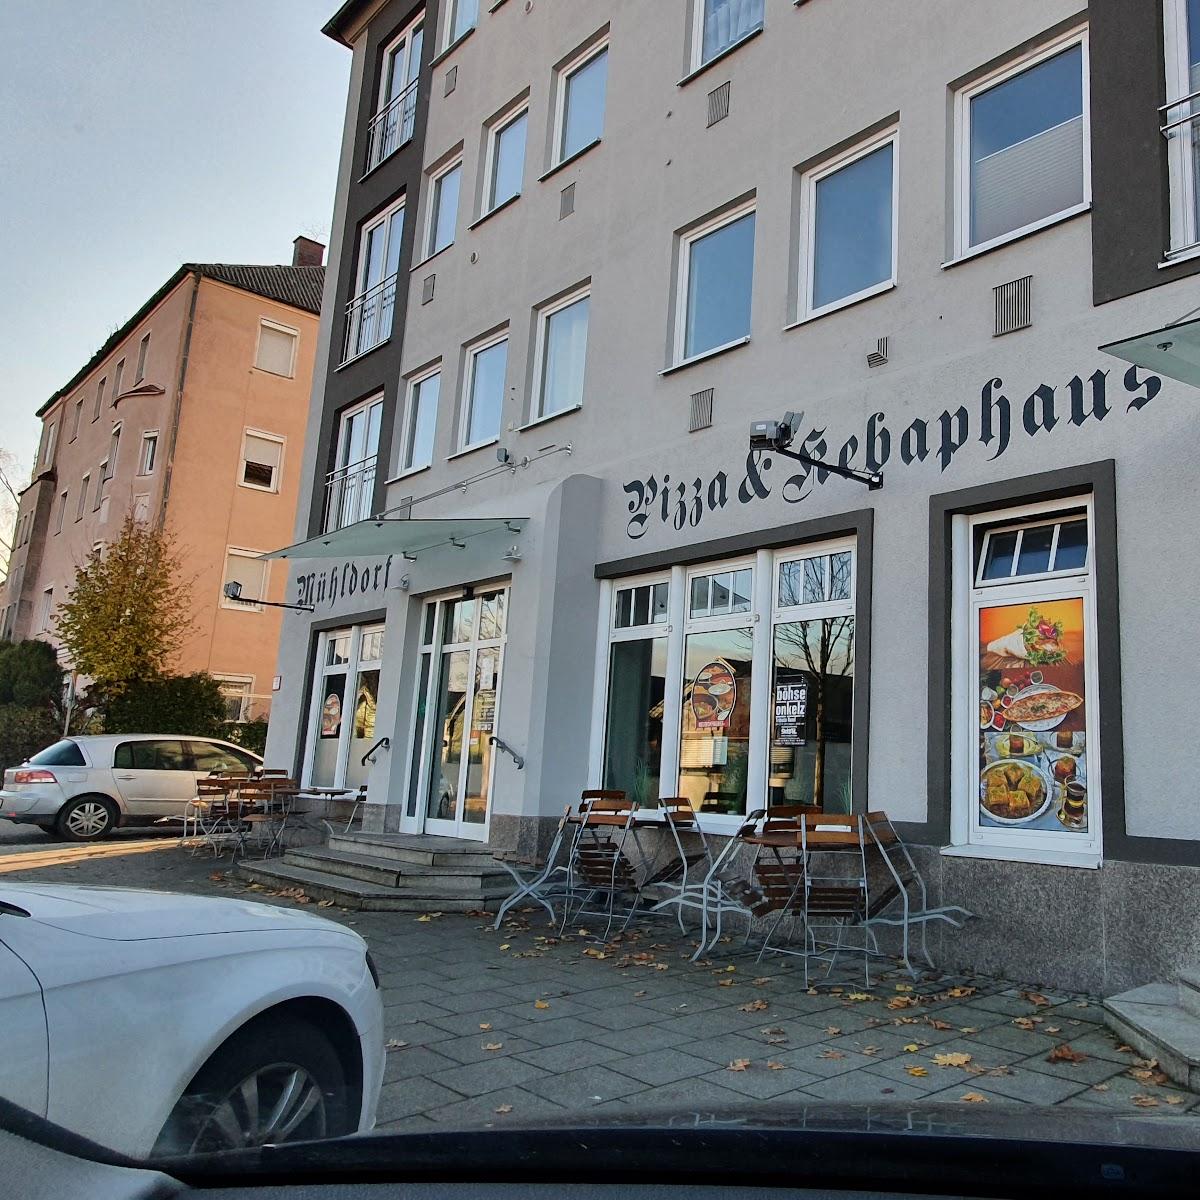 Restaurant "Mühldorfer Pizza- und Kepabhaus" in Mühldorf am Inn